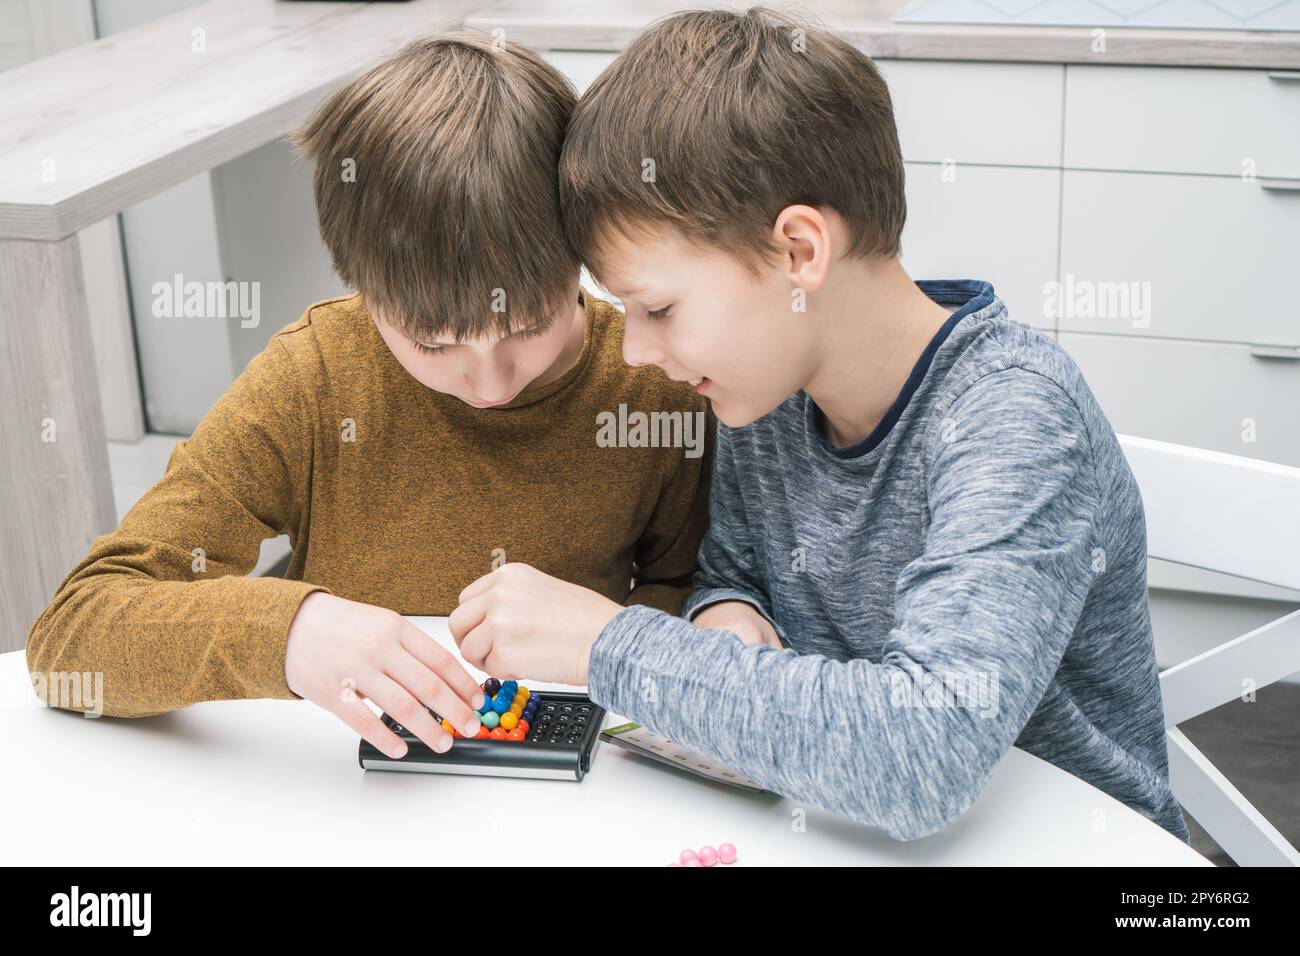 Glückliche Schuljungen spielen Spielzeugbauer am Tisch. Kinder sammeln farbige Details auf dem Spielbrett. Brettspiele. Stockfoto